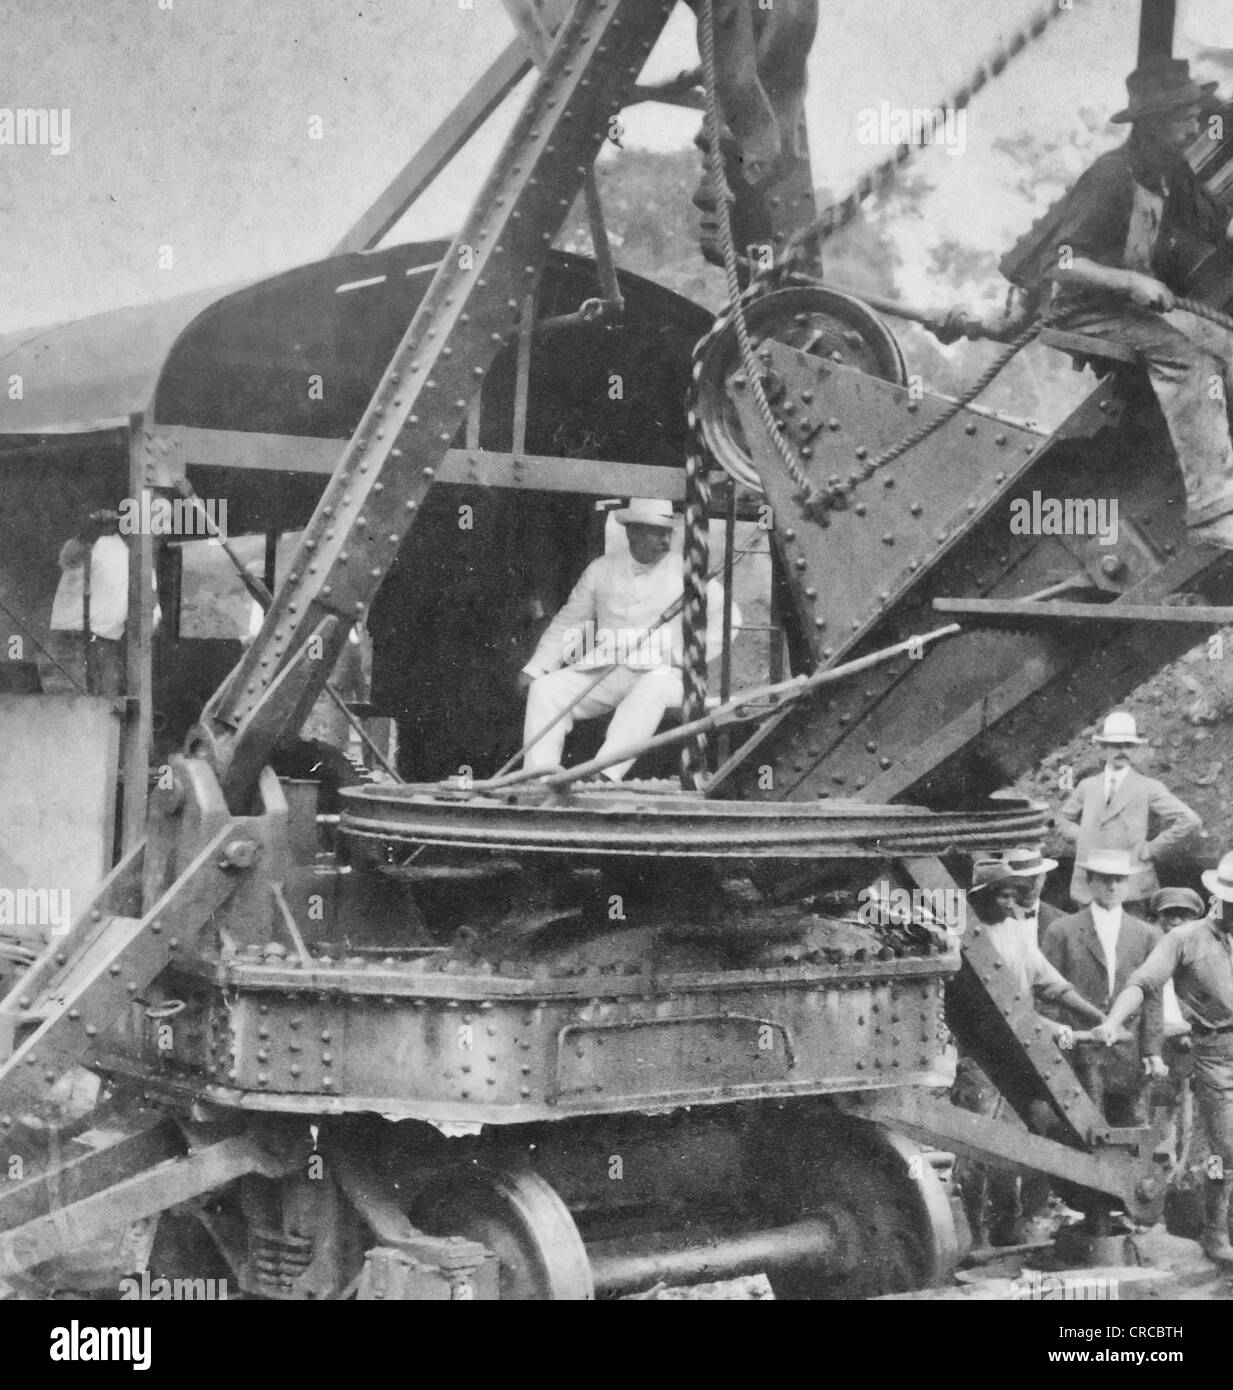 Le président Roosevelt l'exécution d'une pelle à vapeur américain coupe Culebra, Canal de Panama, vers 1906 Banque D'Images